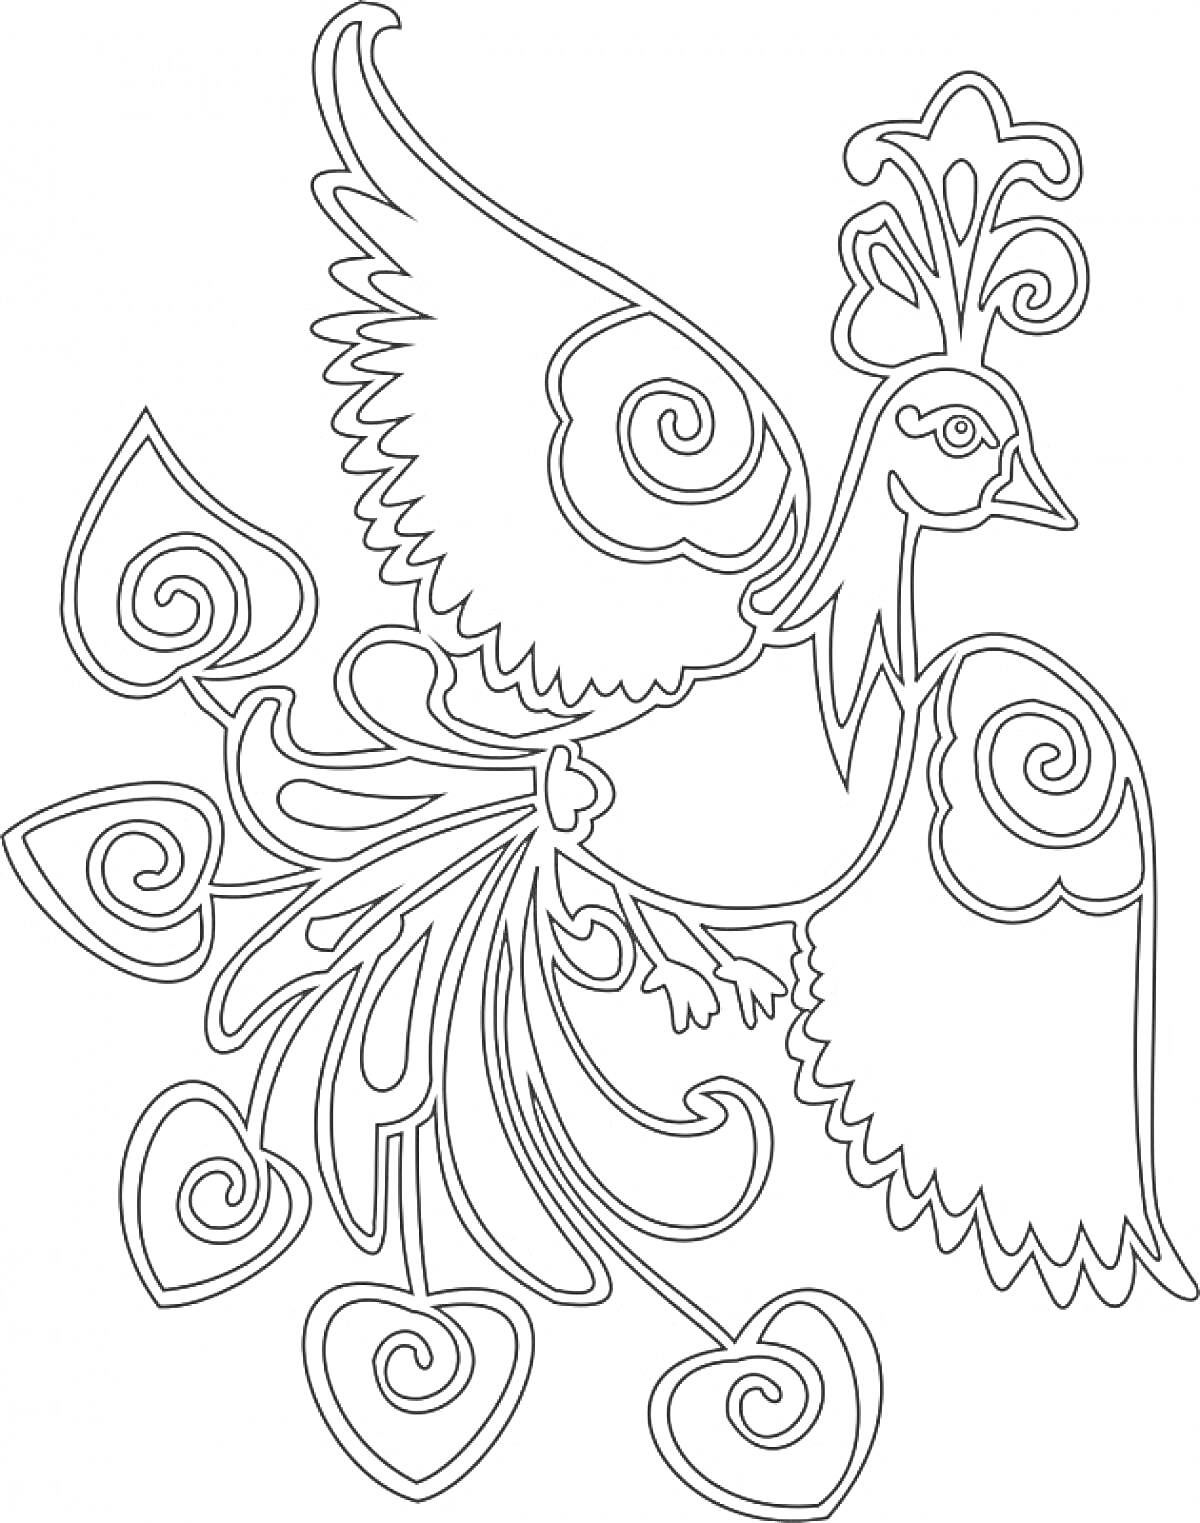 Раскраска Жар-Птица с расправленными крыльями и узорчатым хвостом из сердец